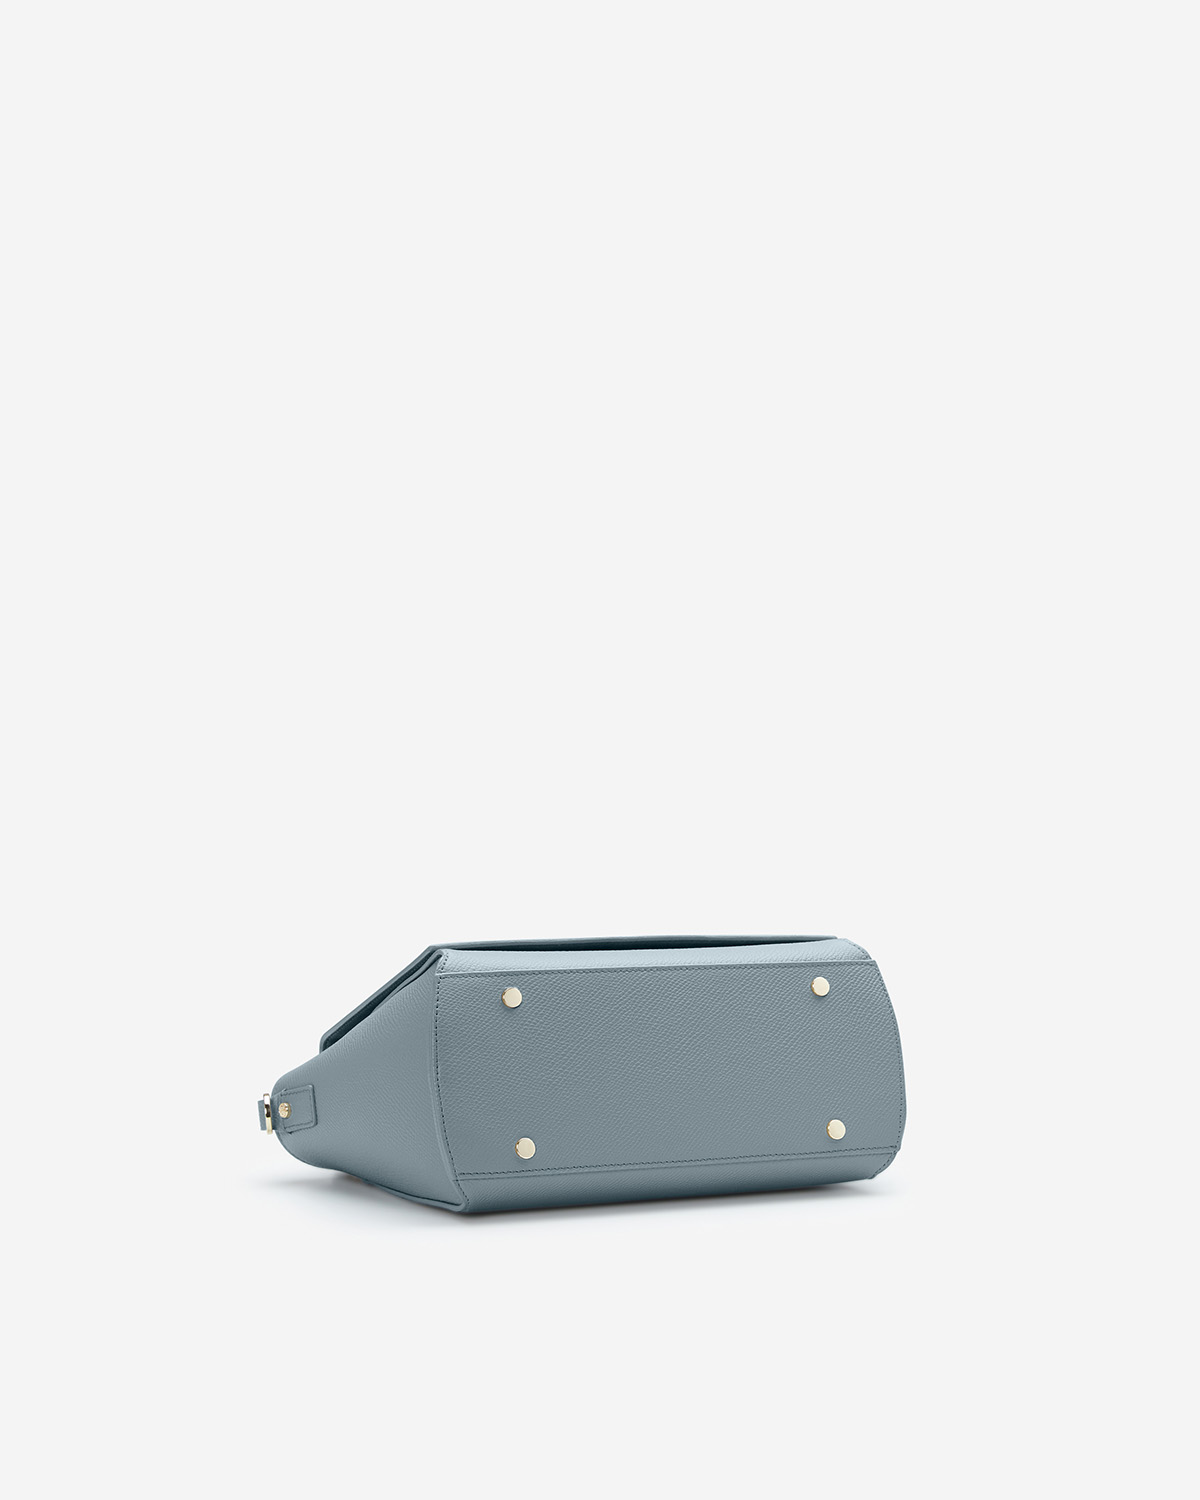 กระเป๋าถือหนังแท้ VERA Heidi Leather Handbag, ไซส์ 28 สี Cloud